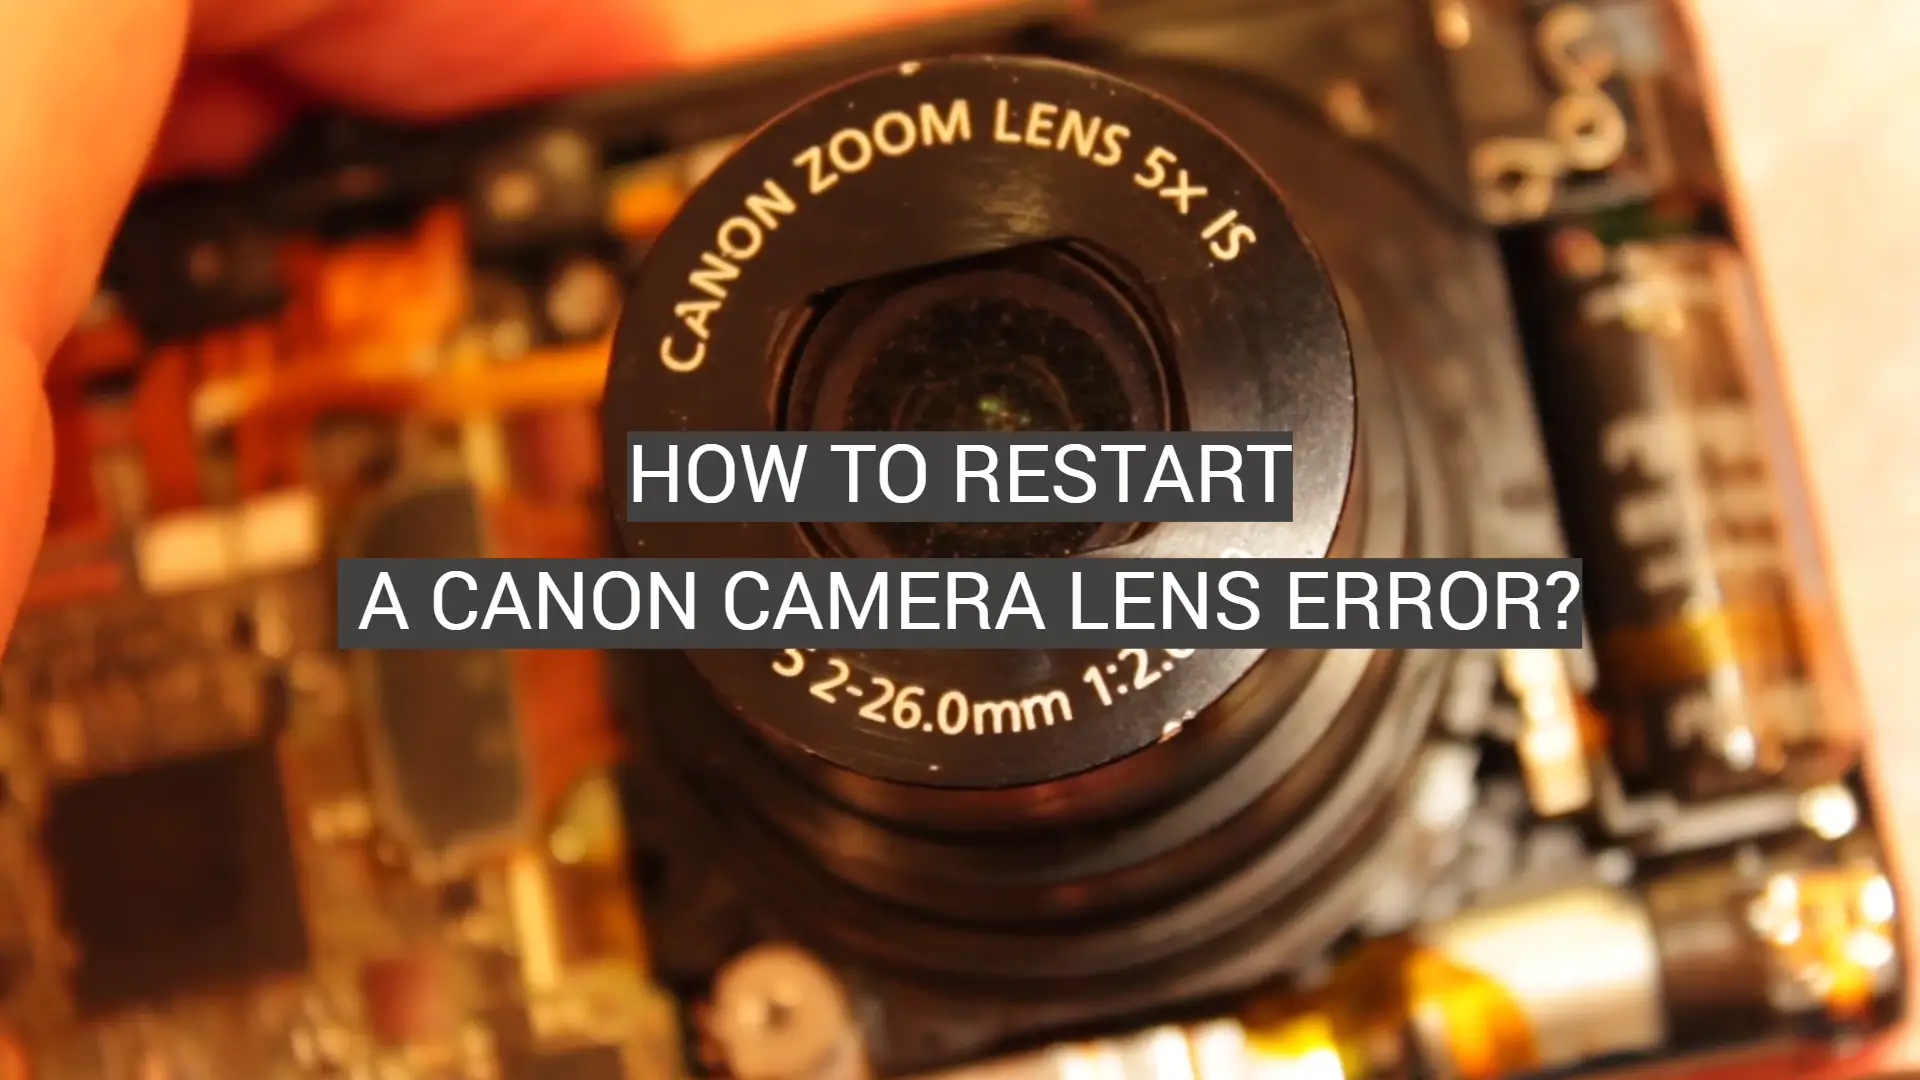 How to Restart a Canon Camera Lens Error?